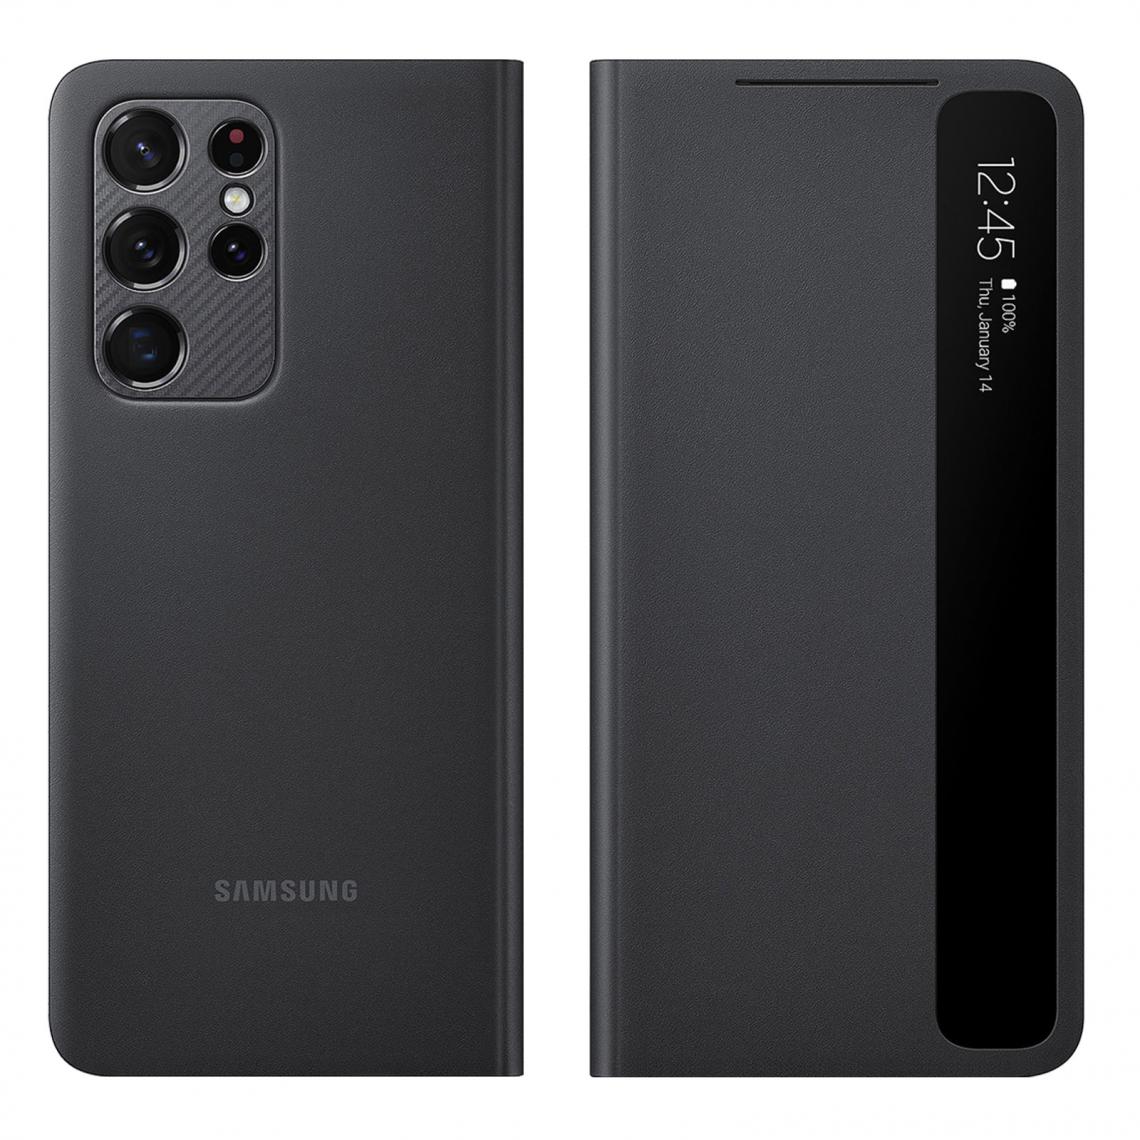 Samsung - Étui Samsung Galaxy S21 Ultra Fenêtre Tactile Smart Clear View Original noir - Coque, étui smartphone